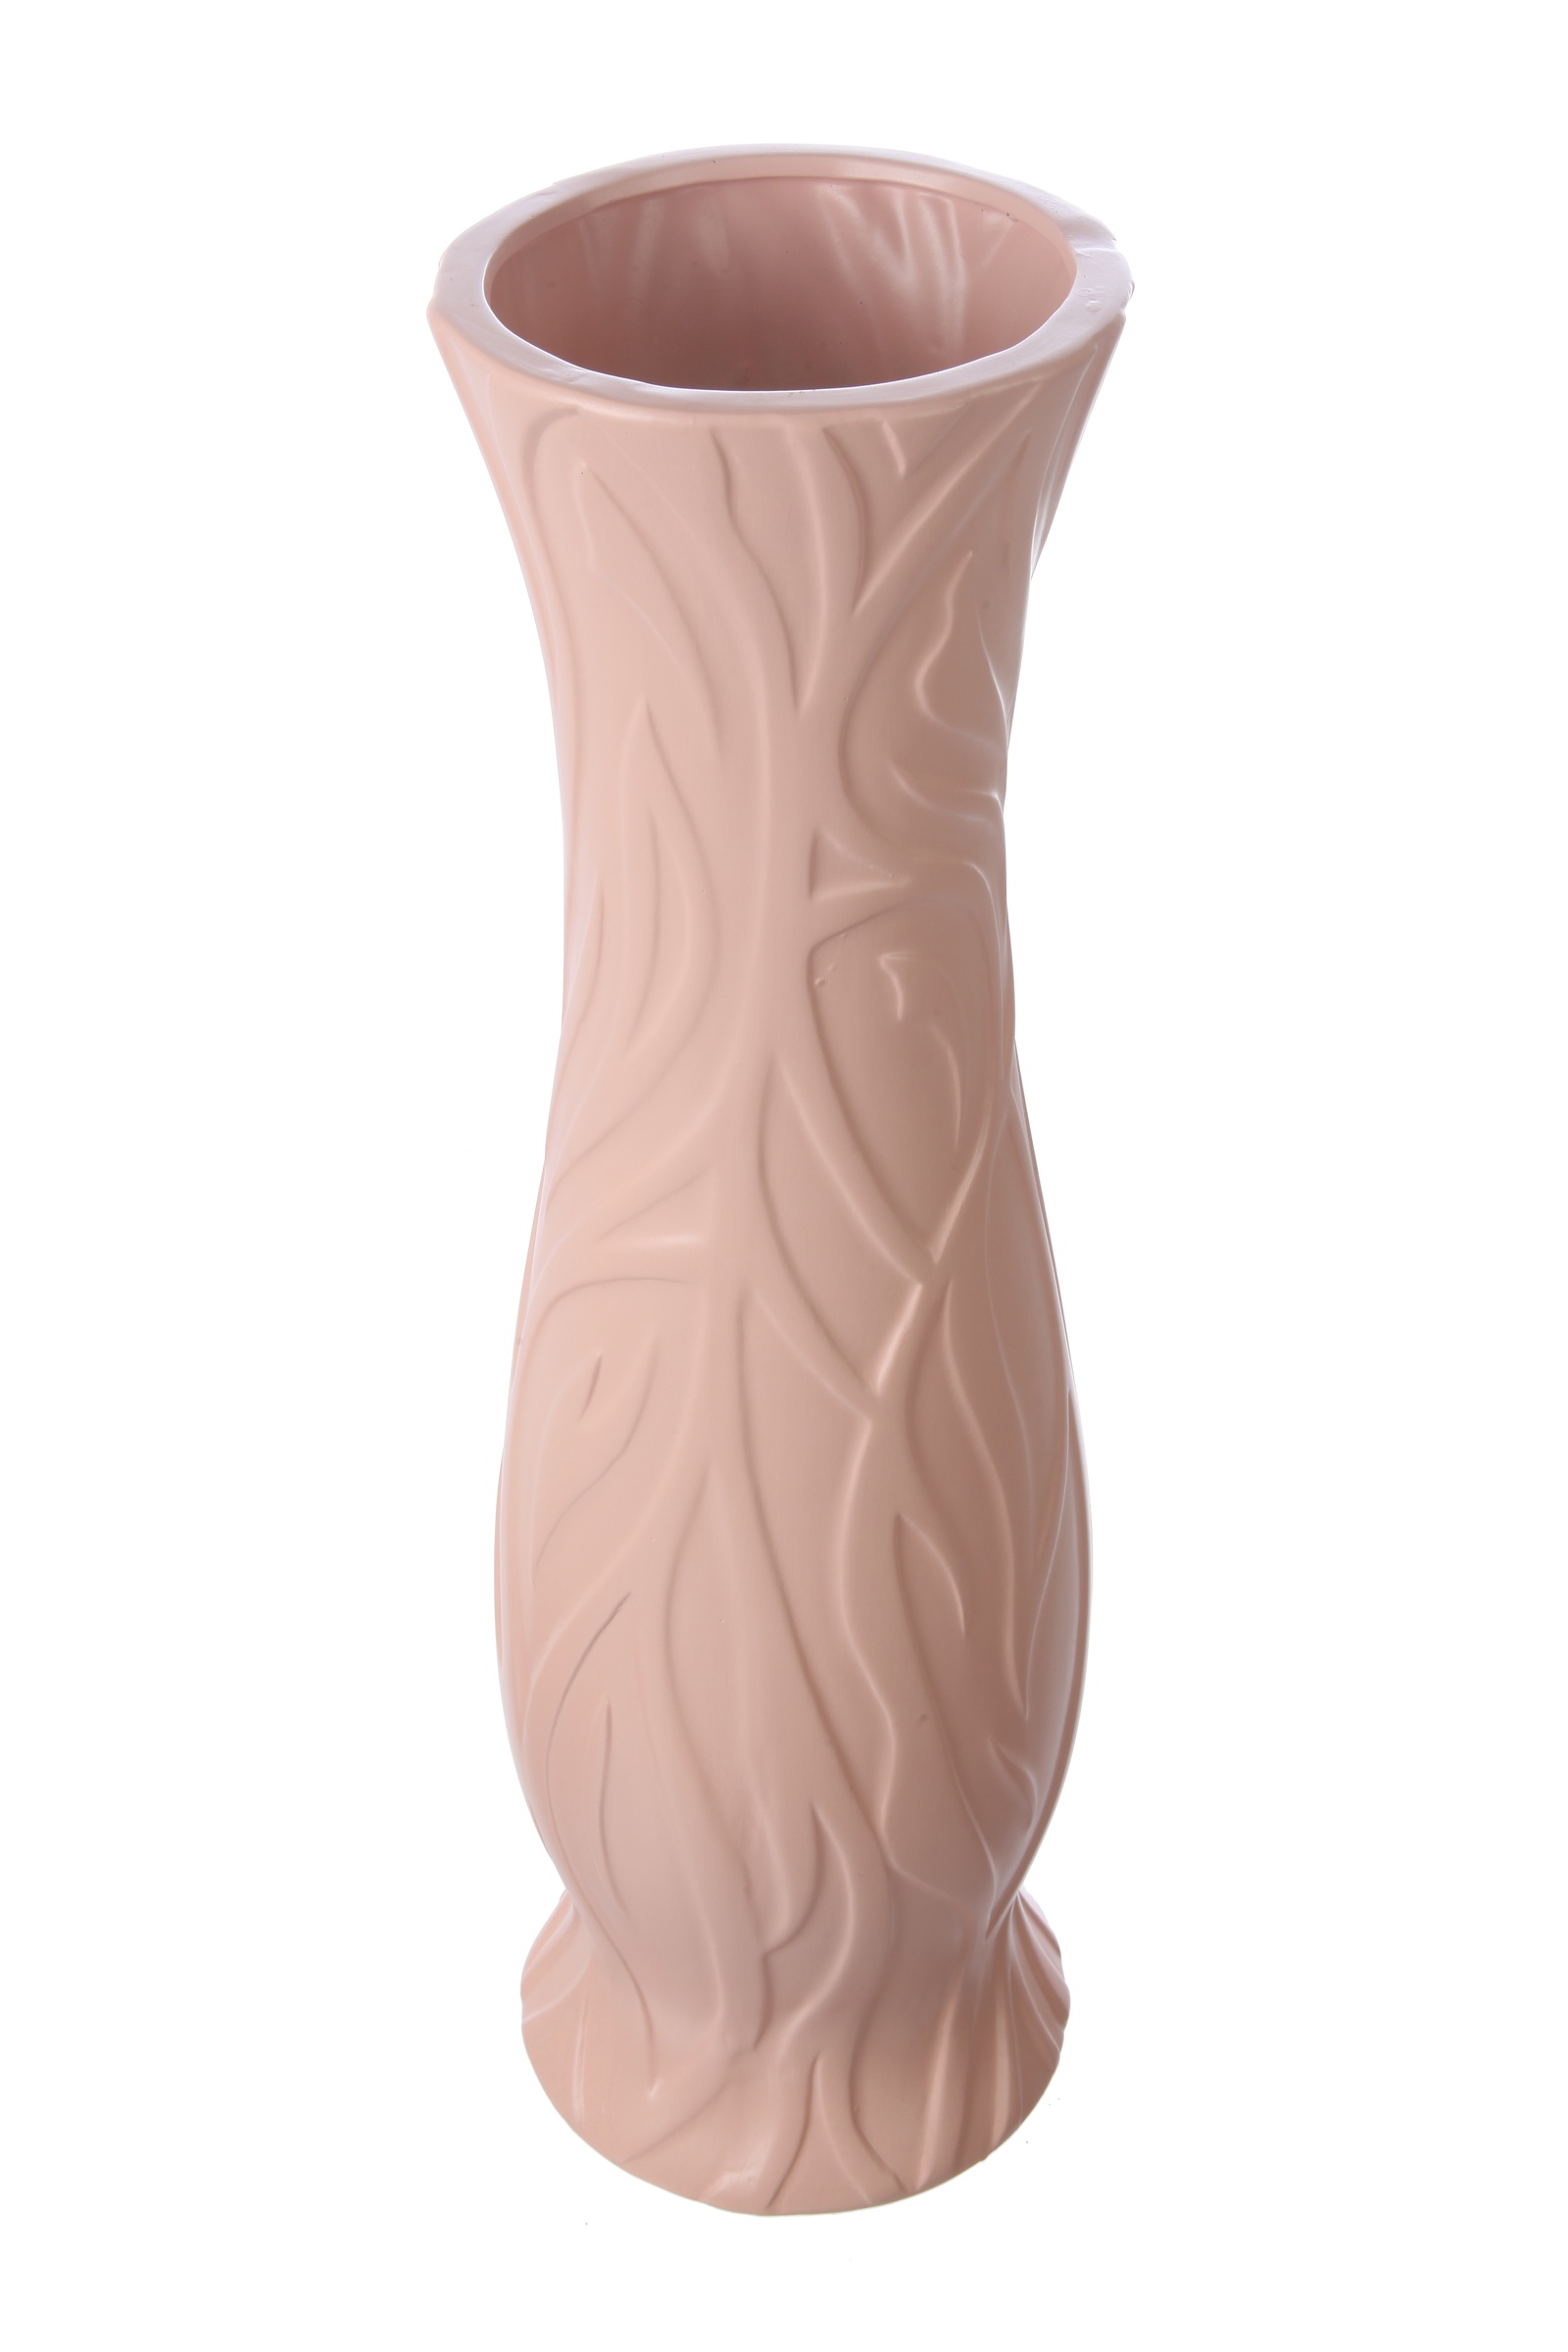 фото Ваза IsmatDecor Керамическая ваза, VB-91 розовый, Керамика